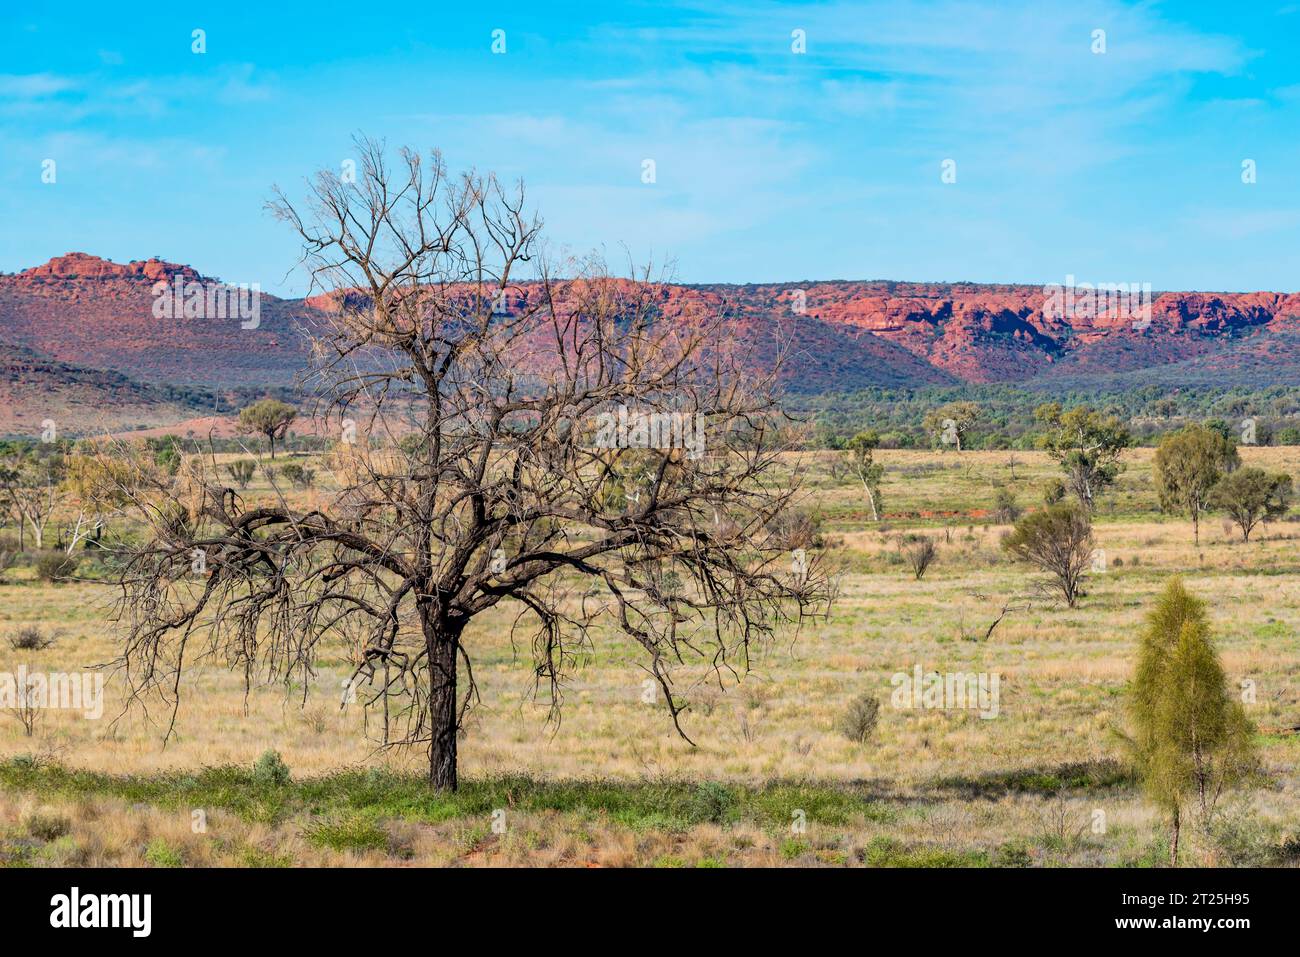 Die Gorge Gill Range in der Nähe des Kings Canyon (Watarrka) Northern Territory, Australien, mit einem jungen und alten Desert Oak Baum im Vordergrund Stockfoto